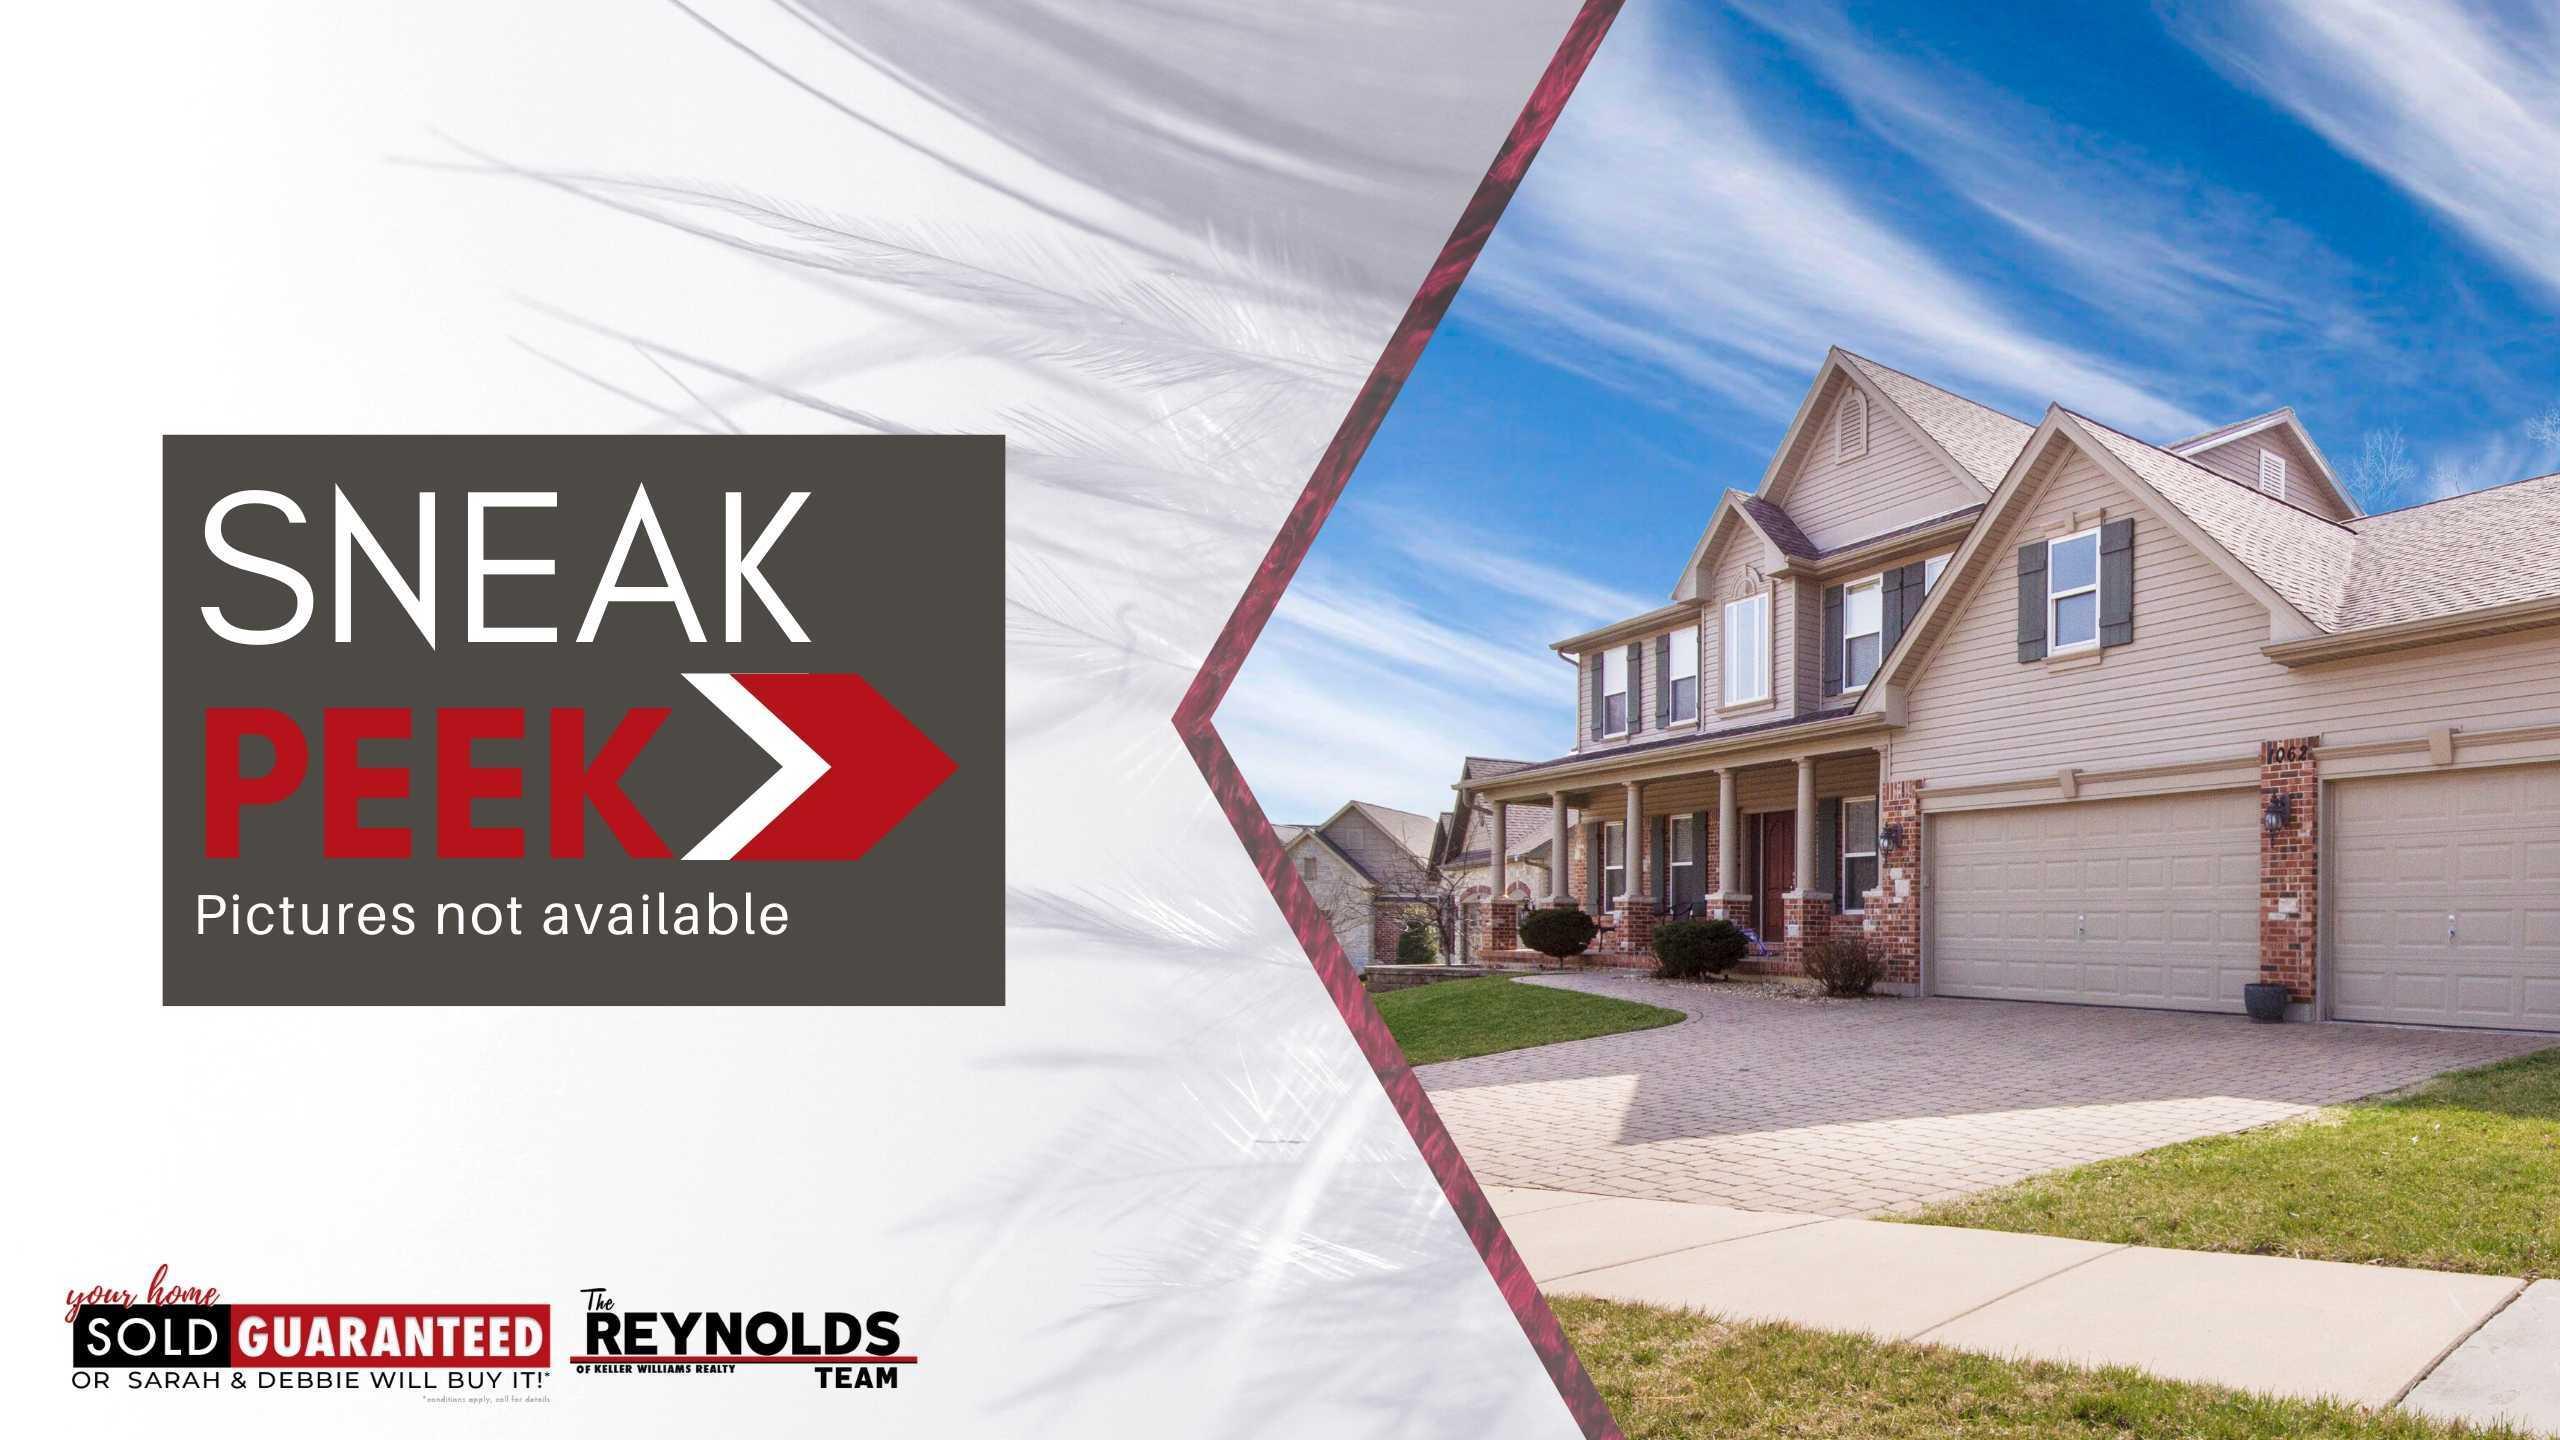 The Reynolds Team Weekly List of Sneak Peek Homes for June 11